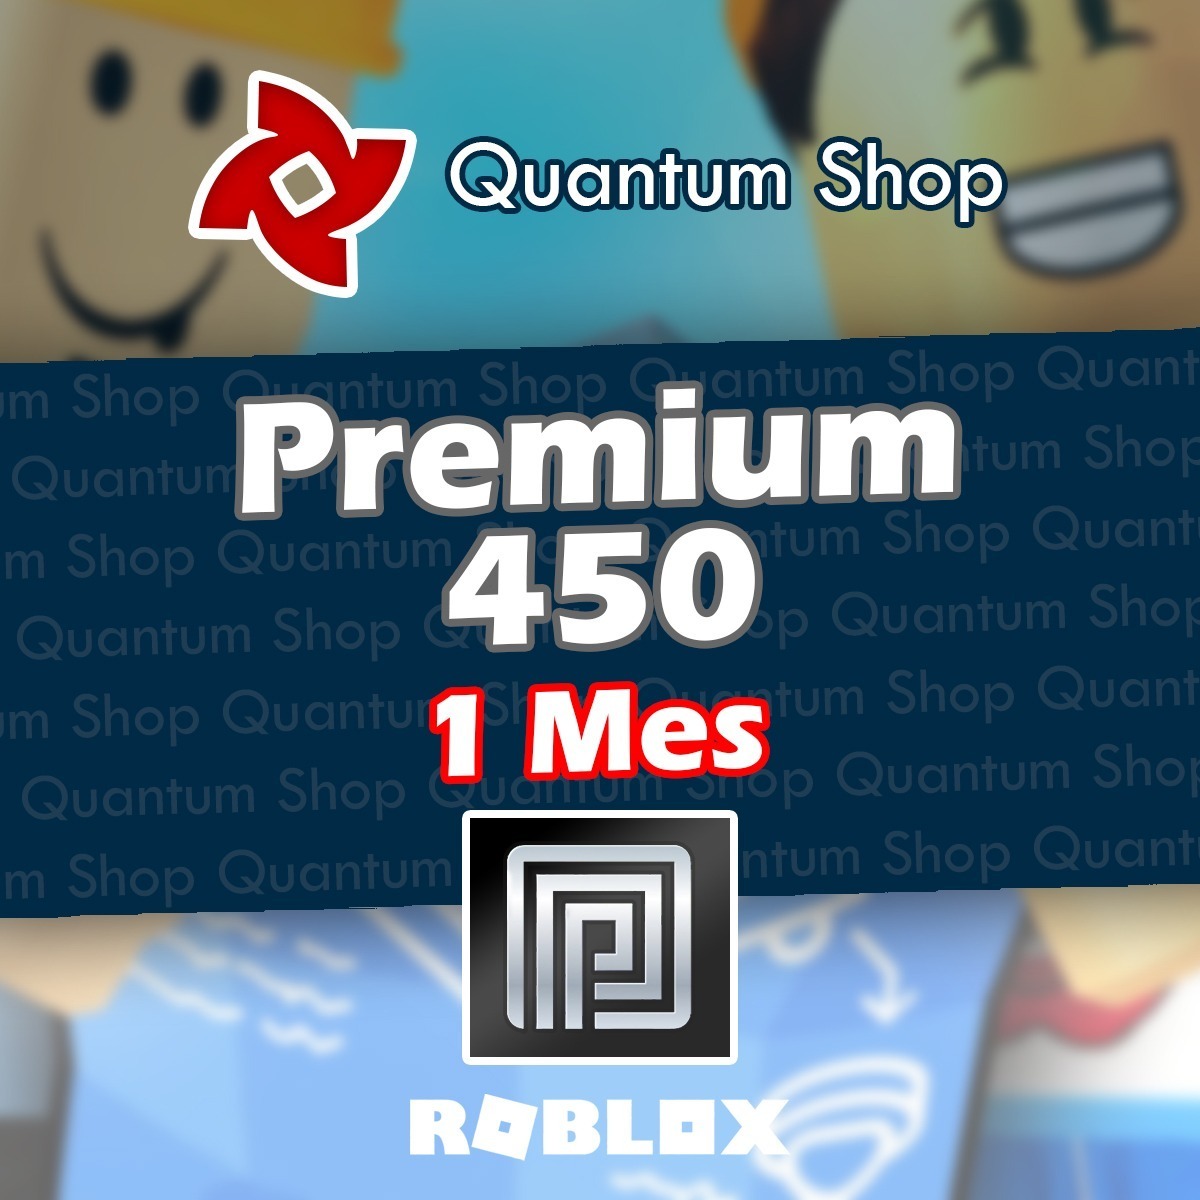 Suscripción Roblox Premium 450 Robux Mercadolider Gold - roblox how to get roblox premium